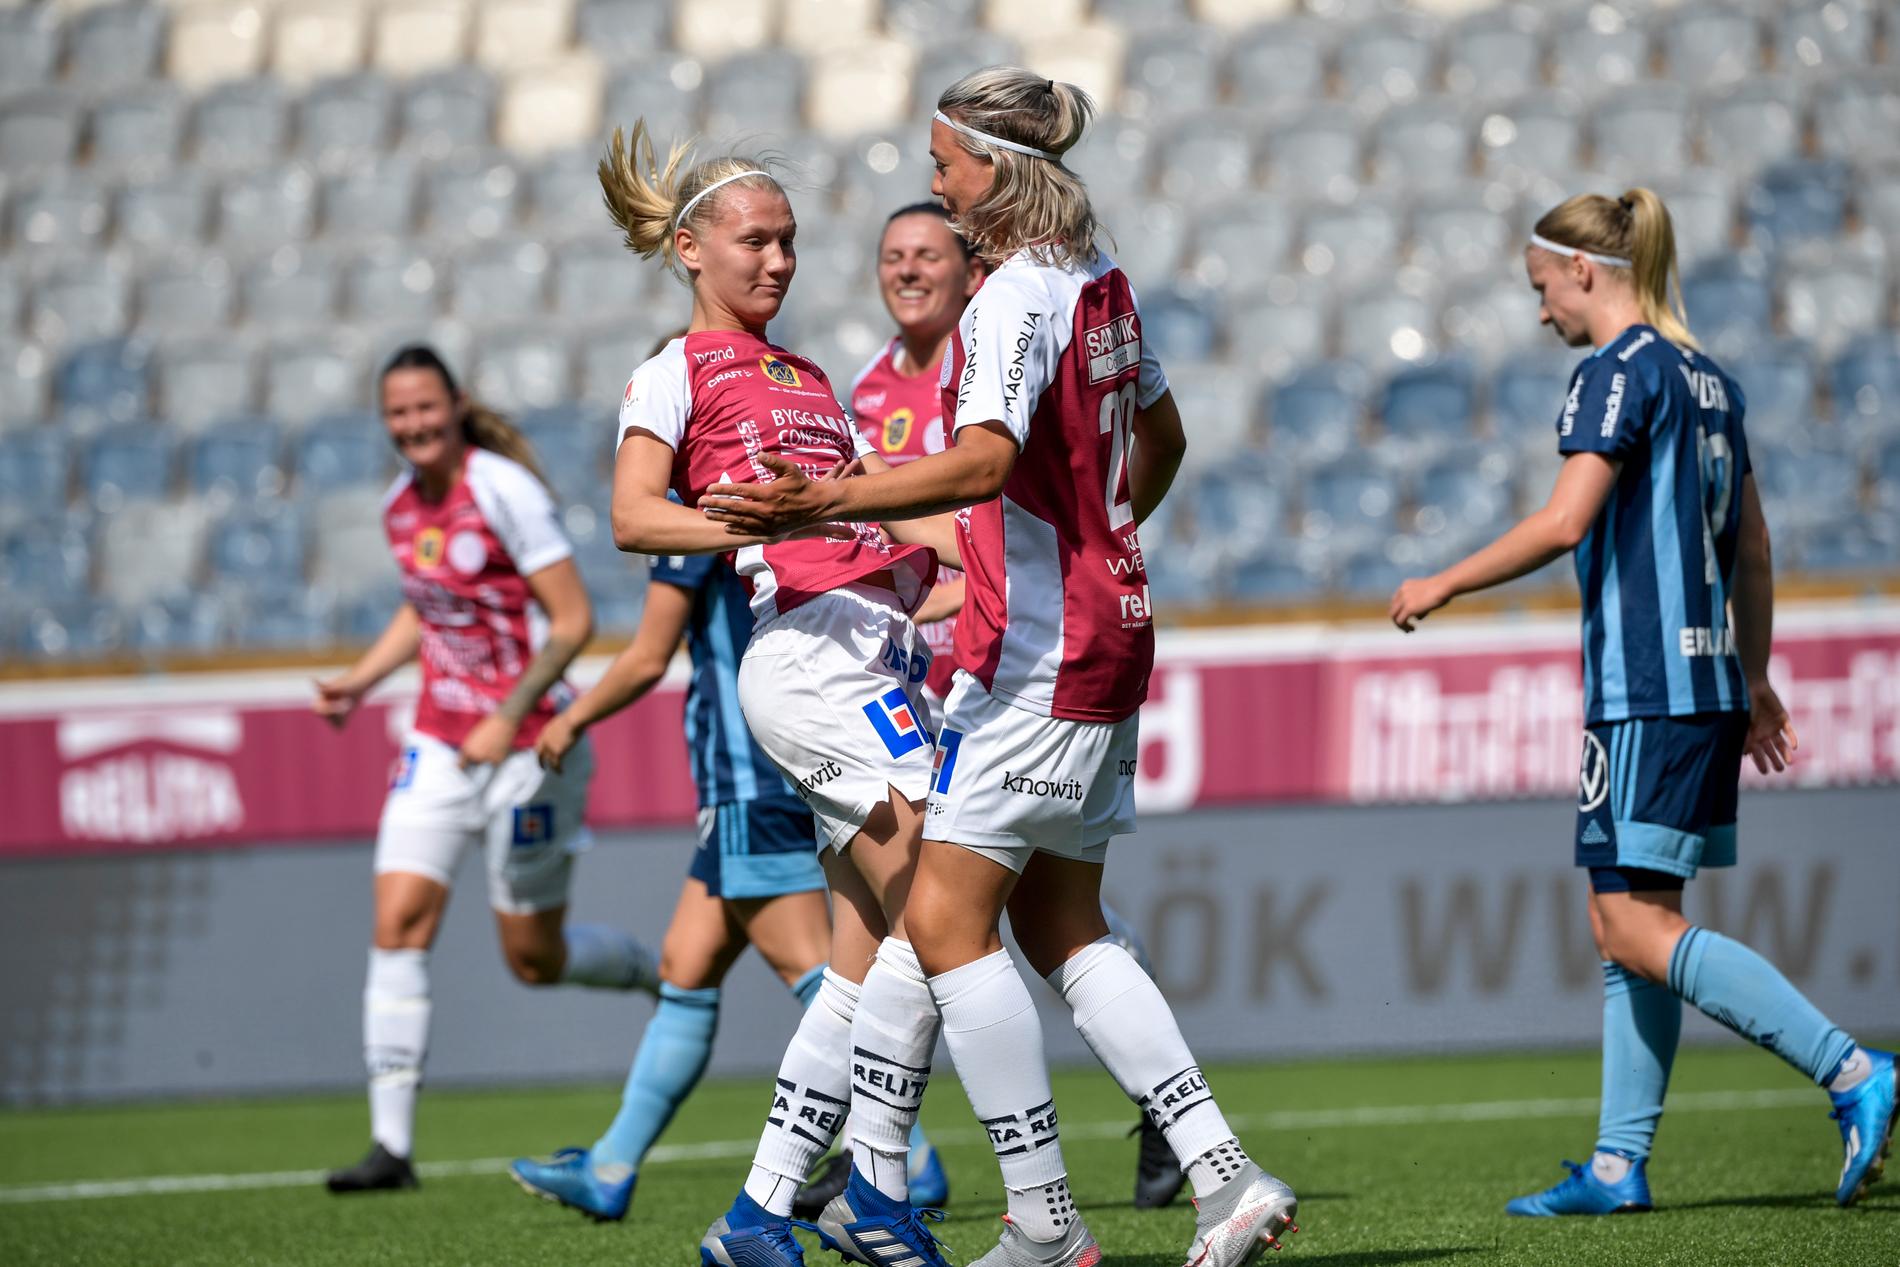 Uppsalas Sara Olai jublar efter att ha gjort 1-1 under lördagens match i damallsvenskan mellan IK Uppsala och Djurgårdens IF.